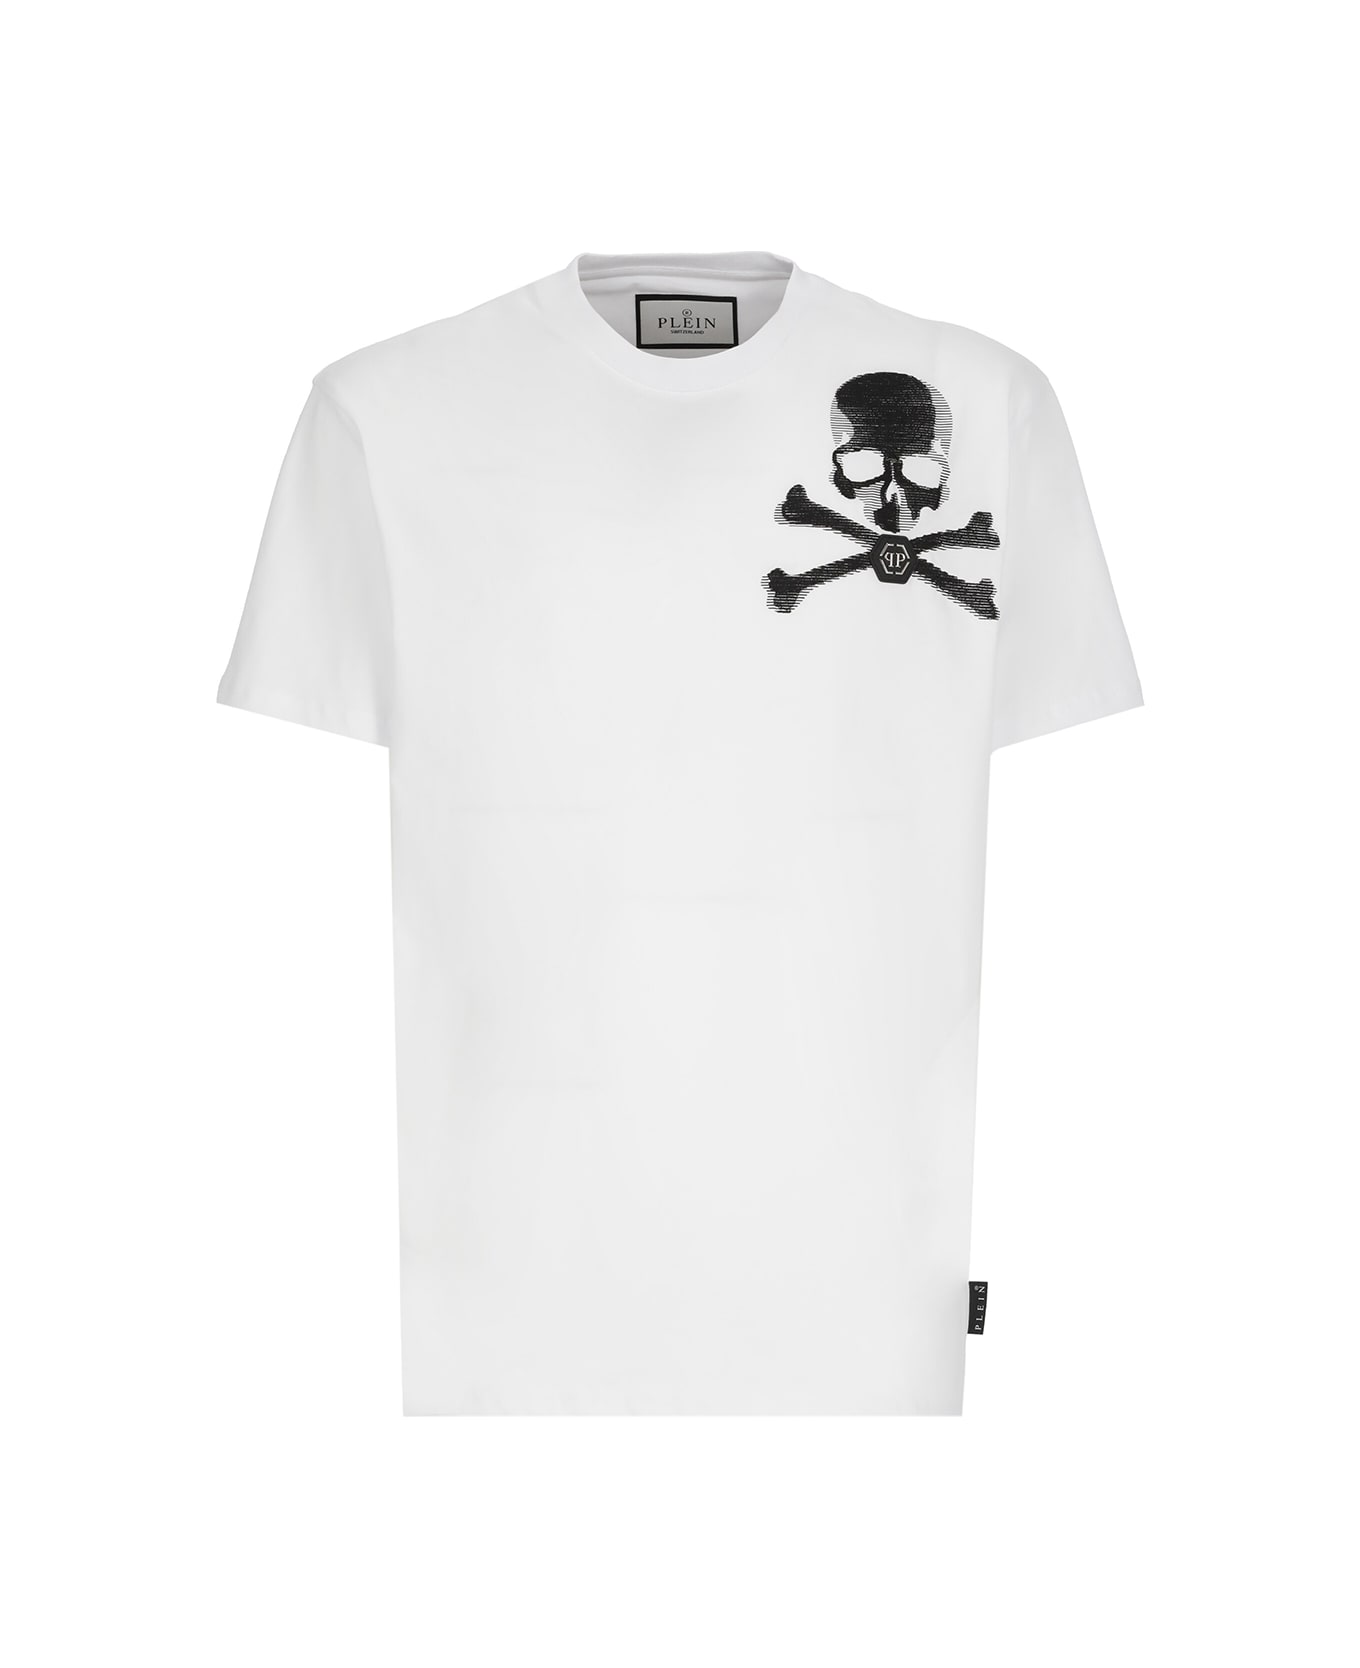 Philipp Plein Skull And Bones T-shirt - White